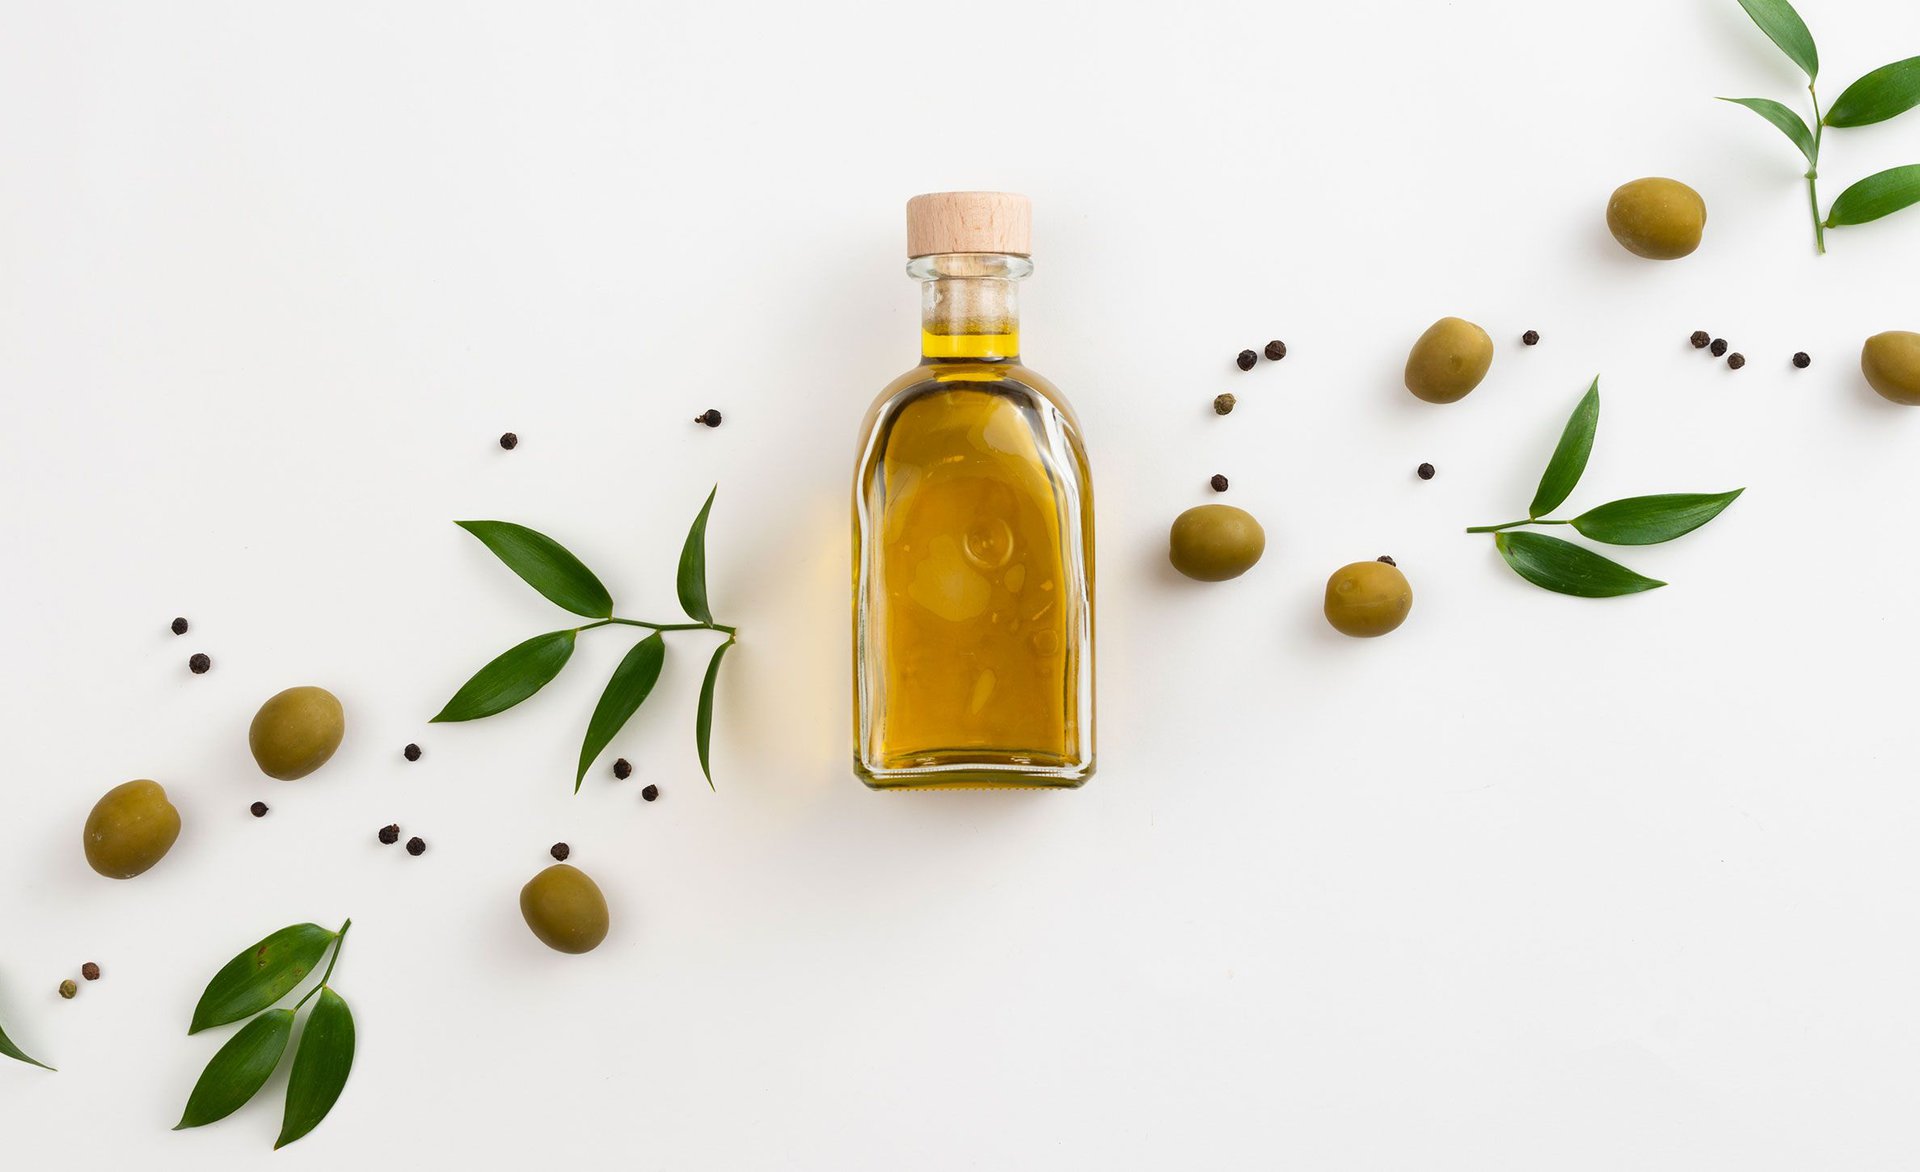 Aceite de oliva propiedades